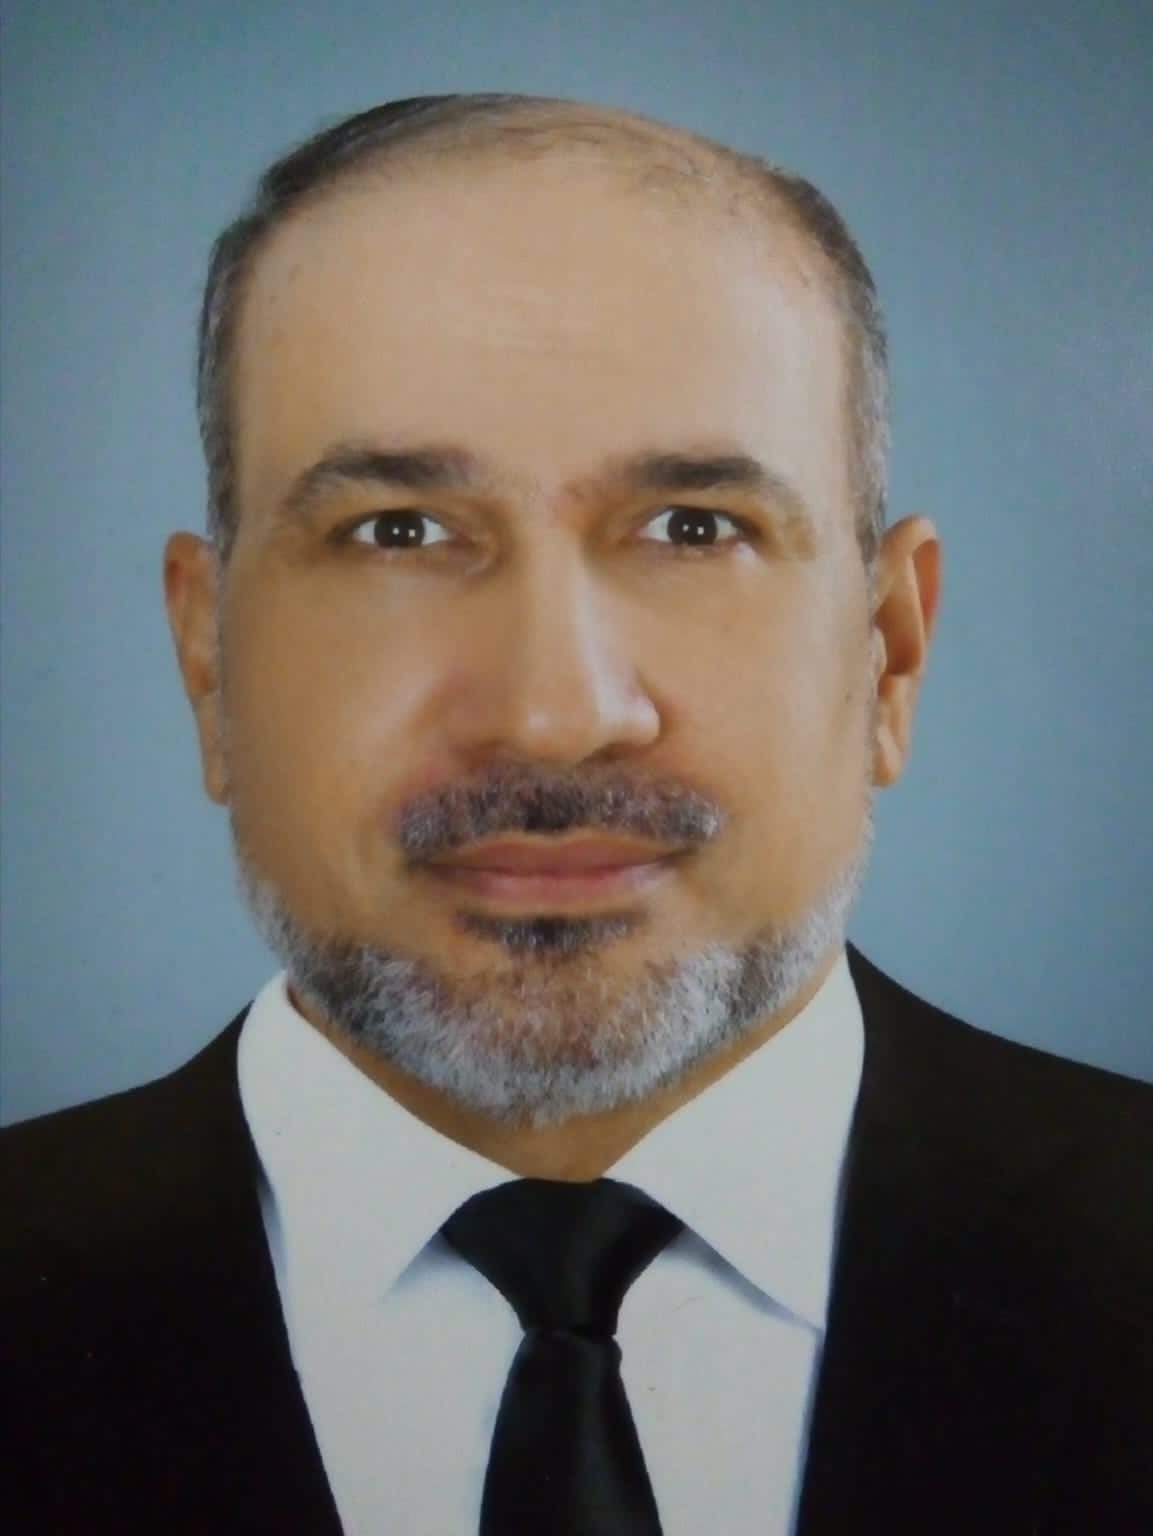 الباحث محمود اسماعيل يحصل على رخصة معتمدة من المركز الفرنسي بالاسكندرية